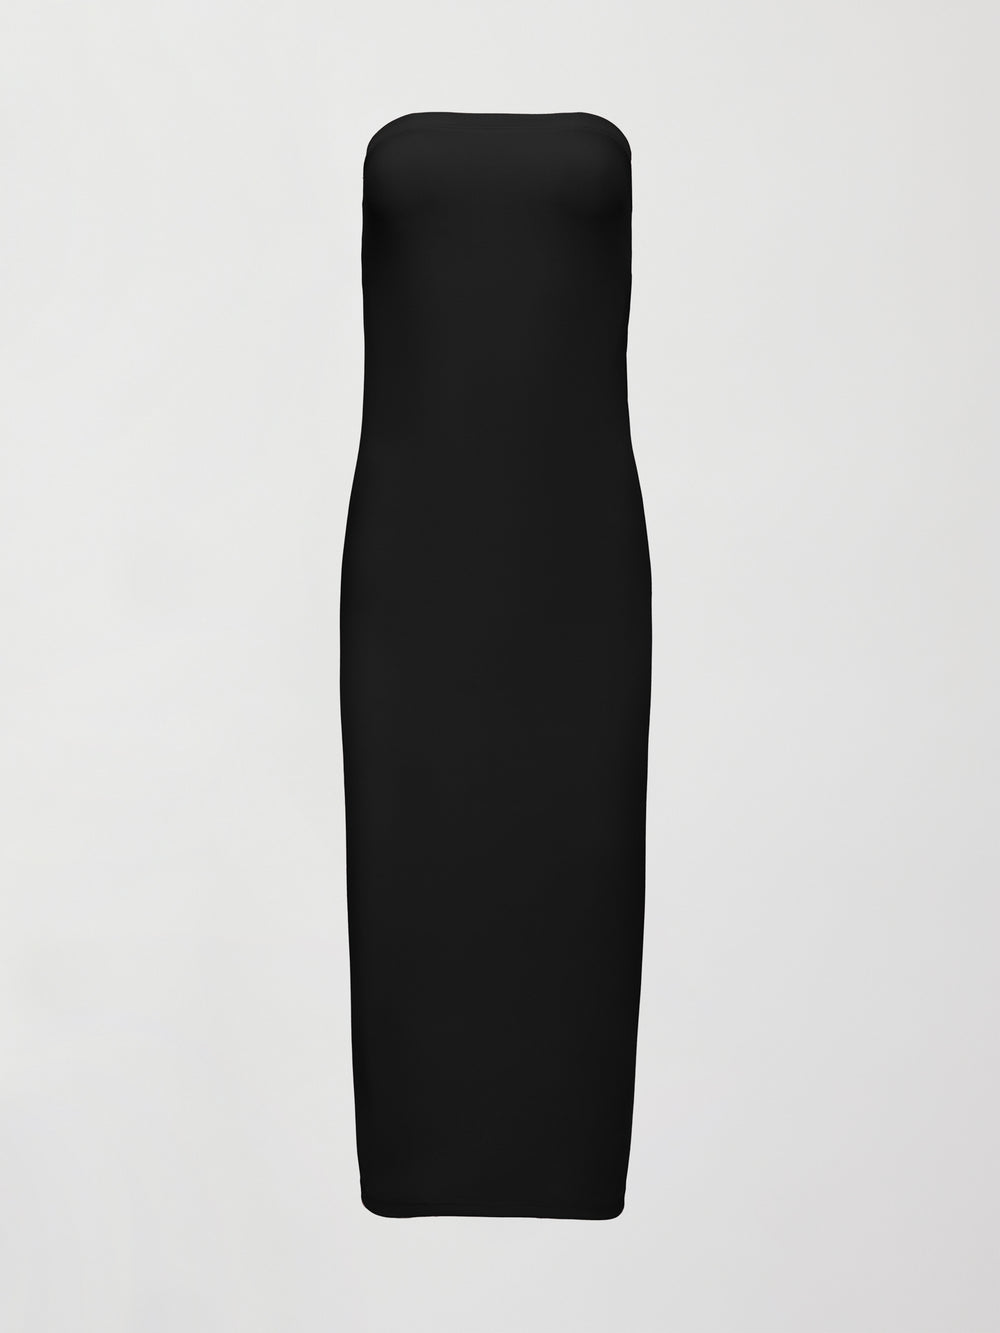 Strapless Dress in Melt - Black